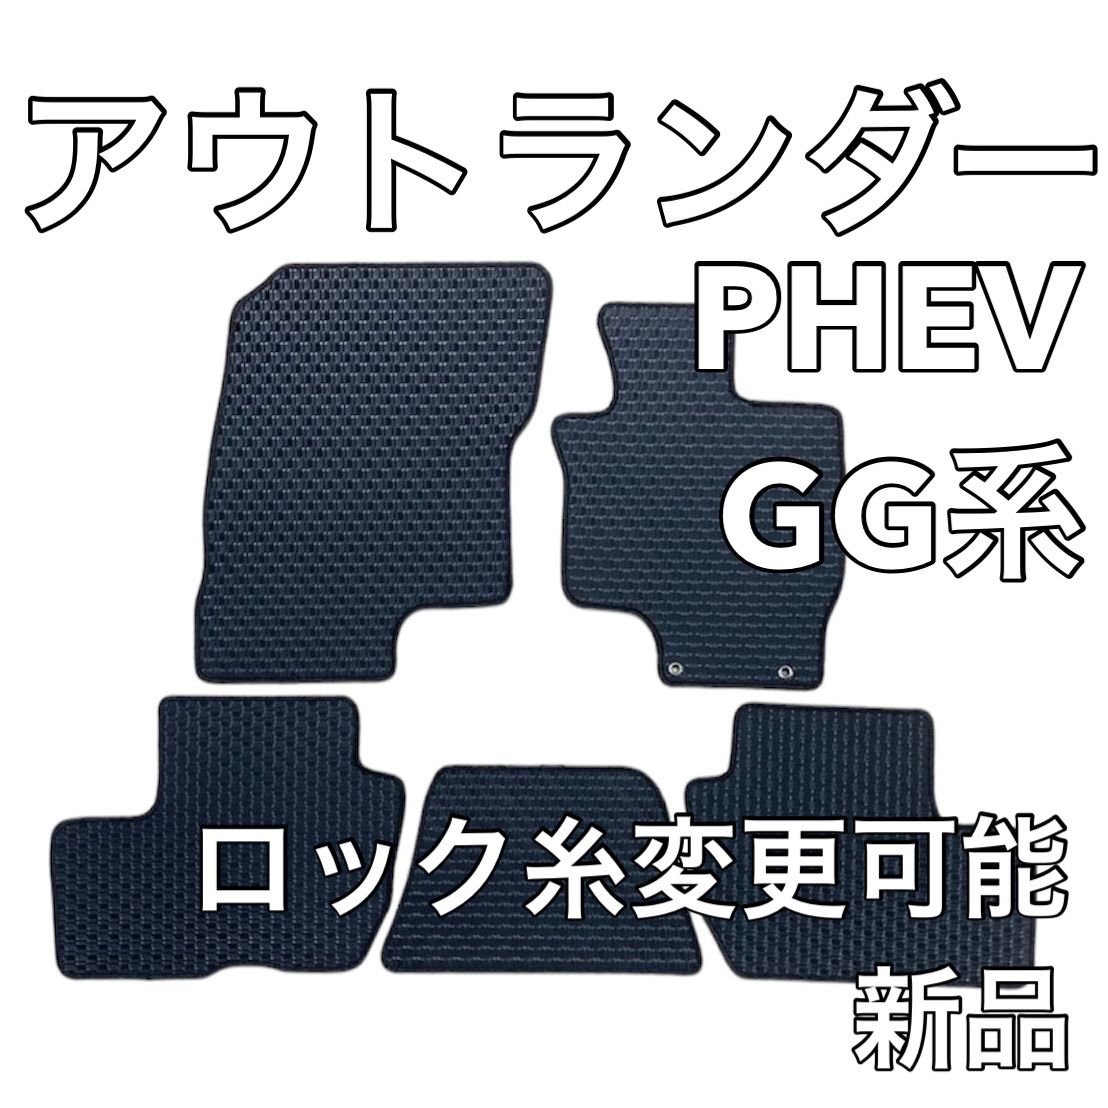 三菱 アウトランダー PHEV GG系 フロアマット ラバー 新品 国産 メルカリ